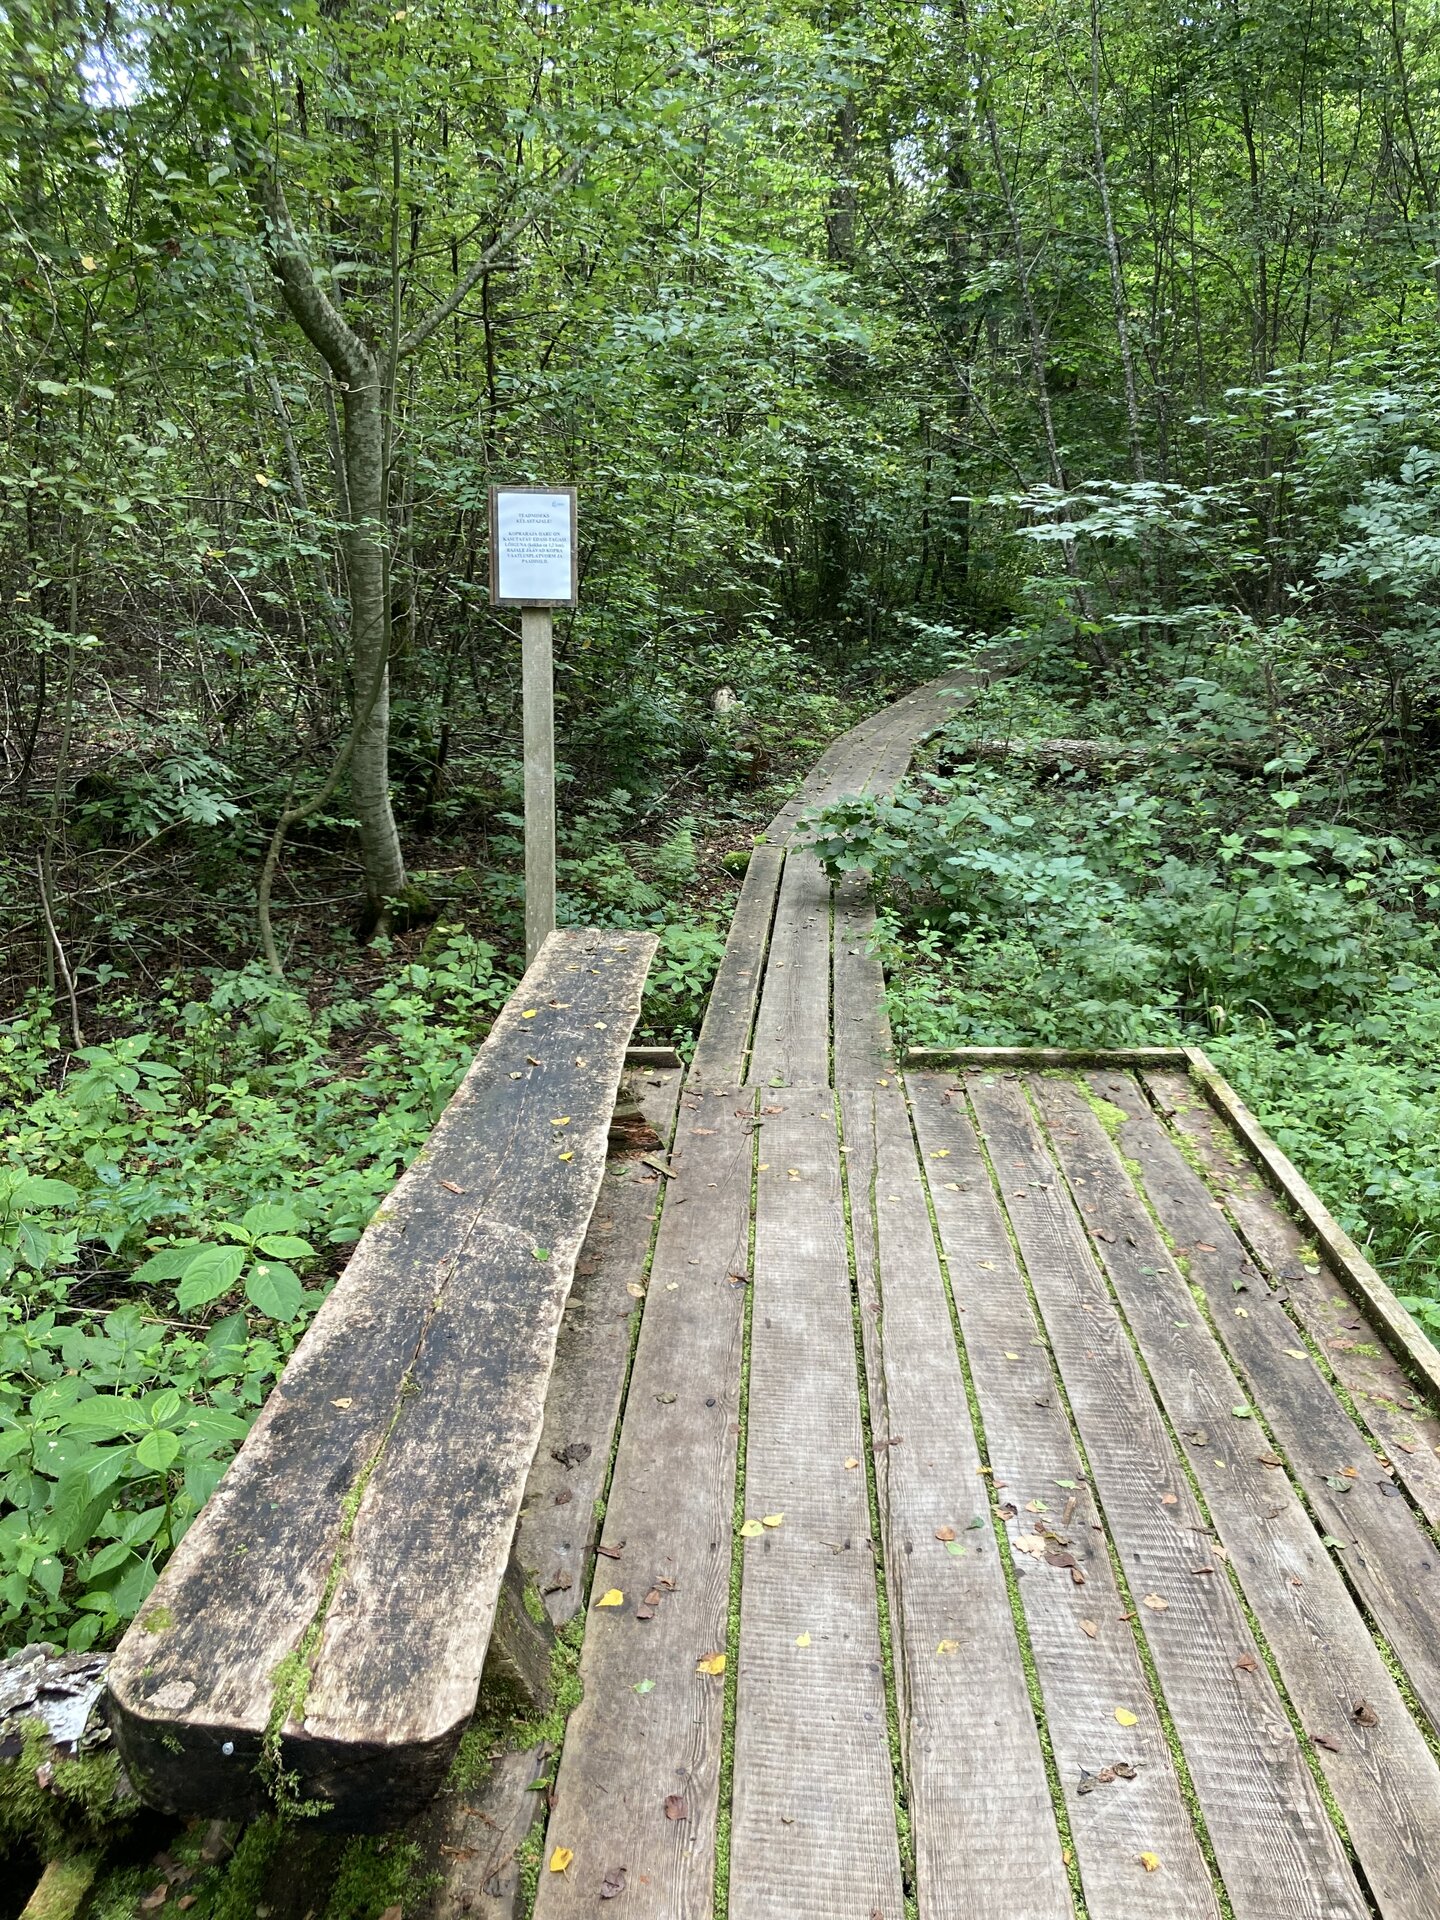 Elistvere study trail has several observation platforms